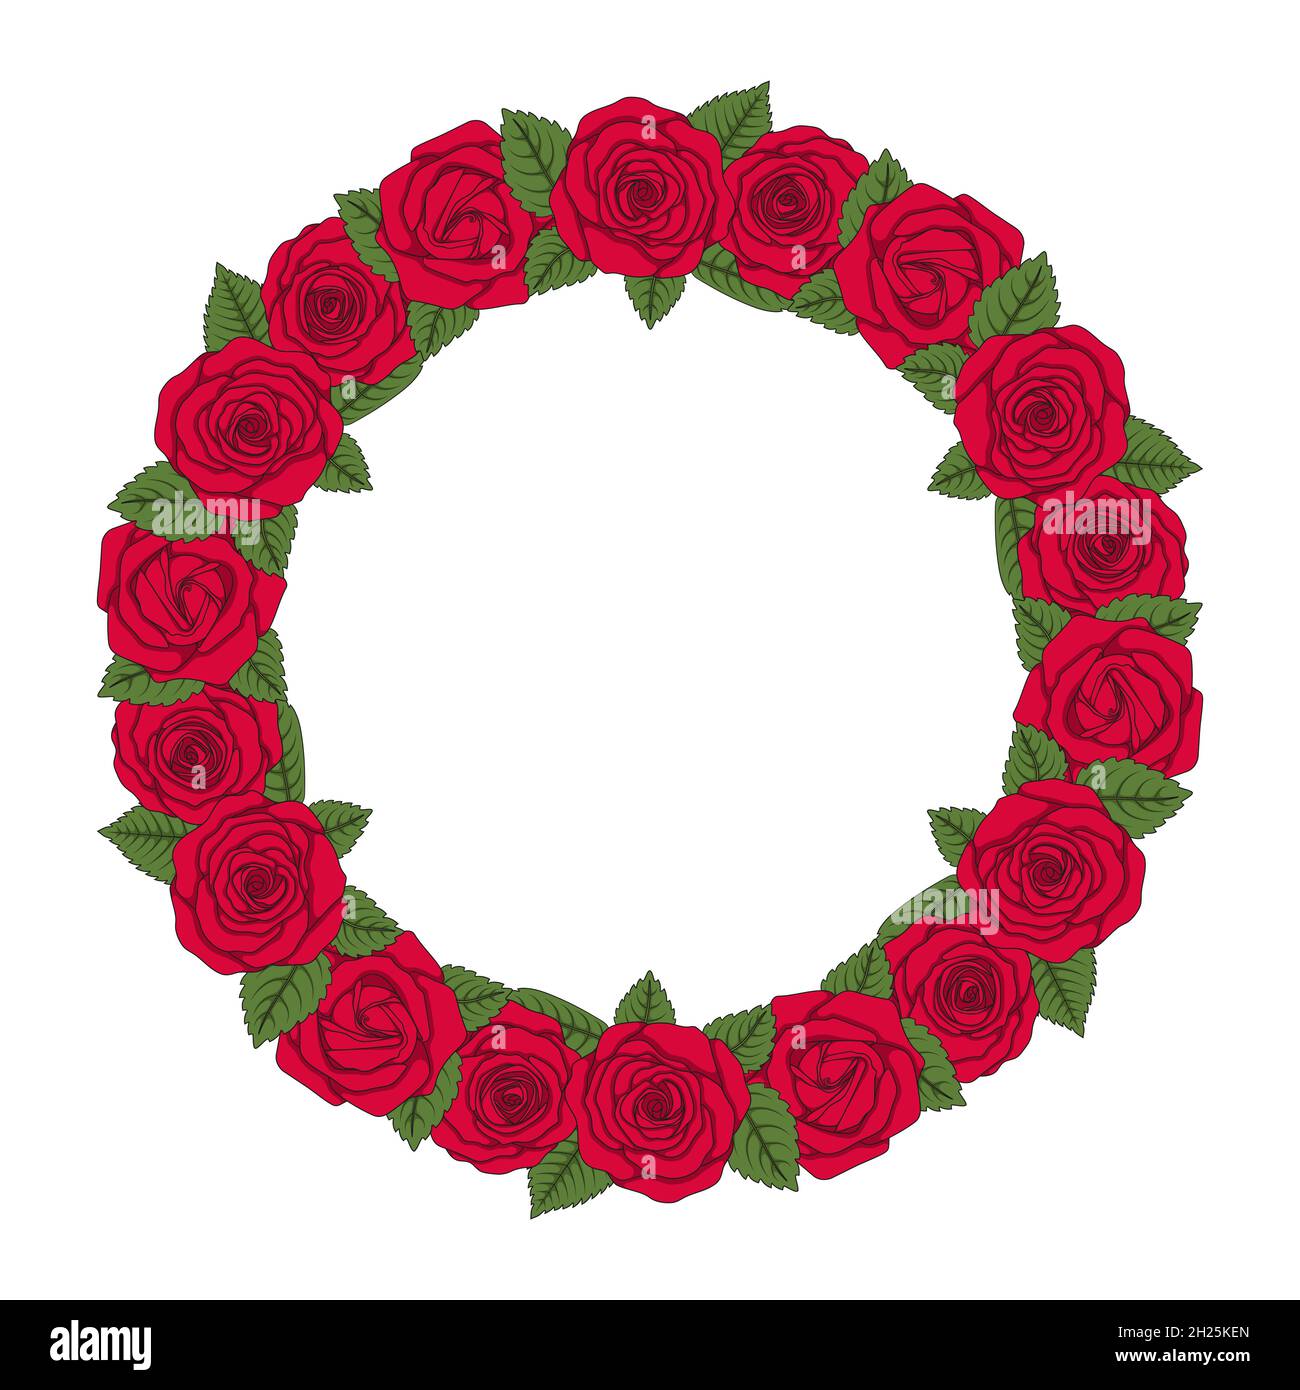 Farbige Abbildung eines runden Kranzes aus roten Rosen. Isoliertes Vektorobjekt auf weißem Hintergrund. Stock Vektor